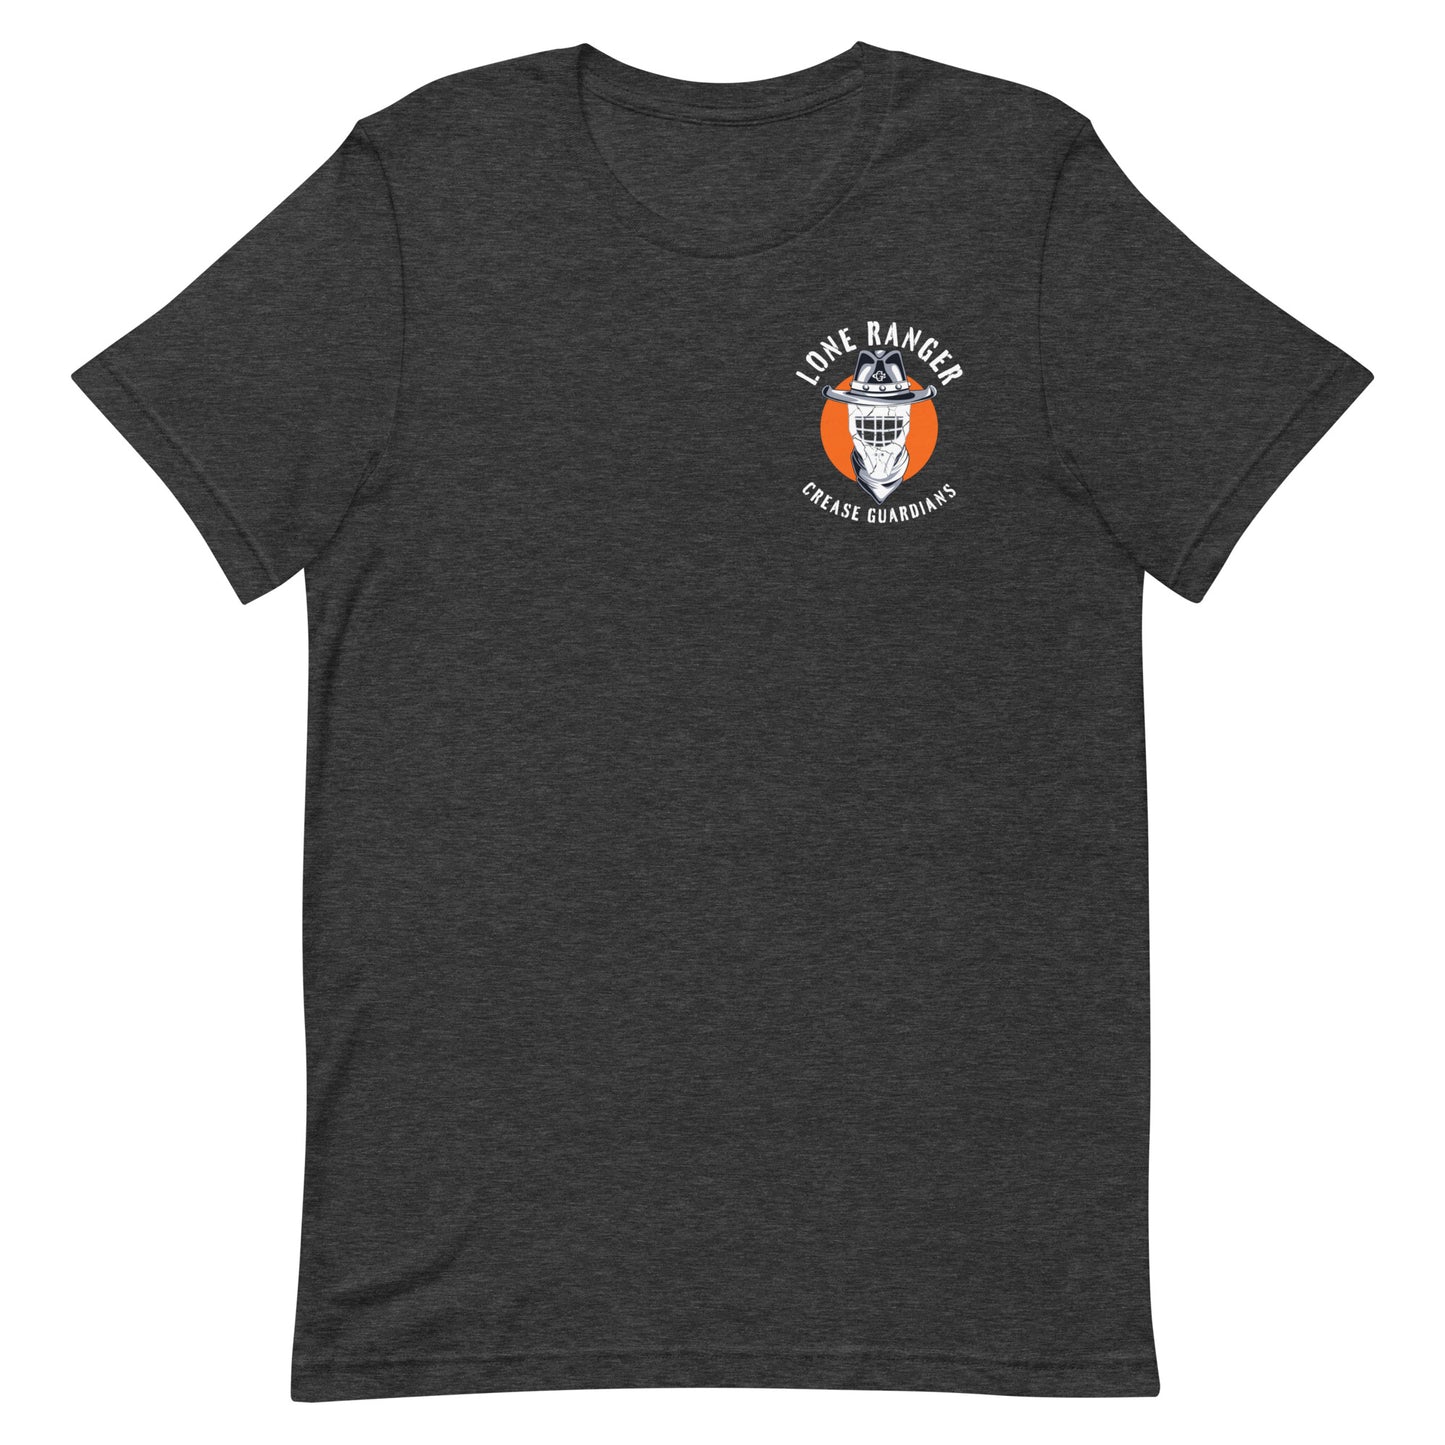 The Lone Ranger Unisex t-shirt